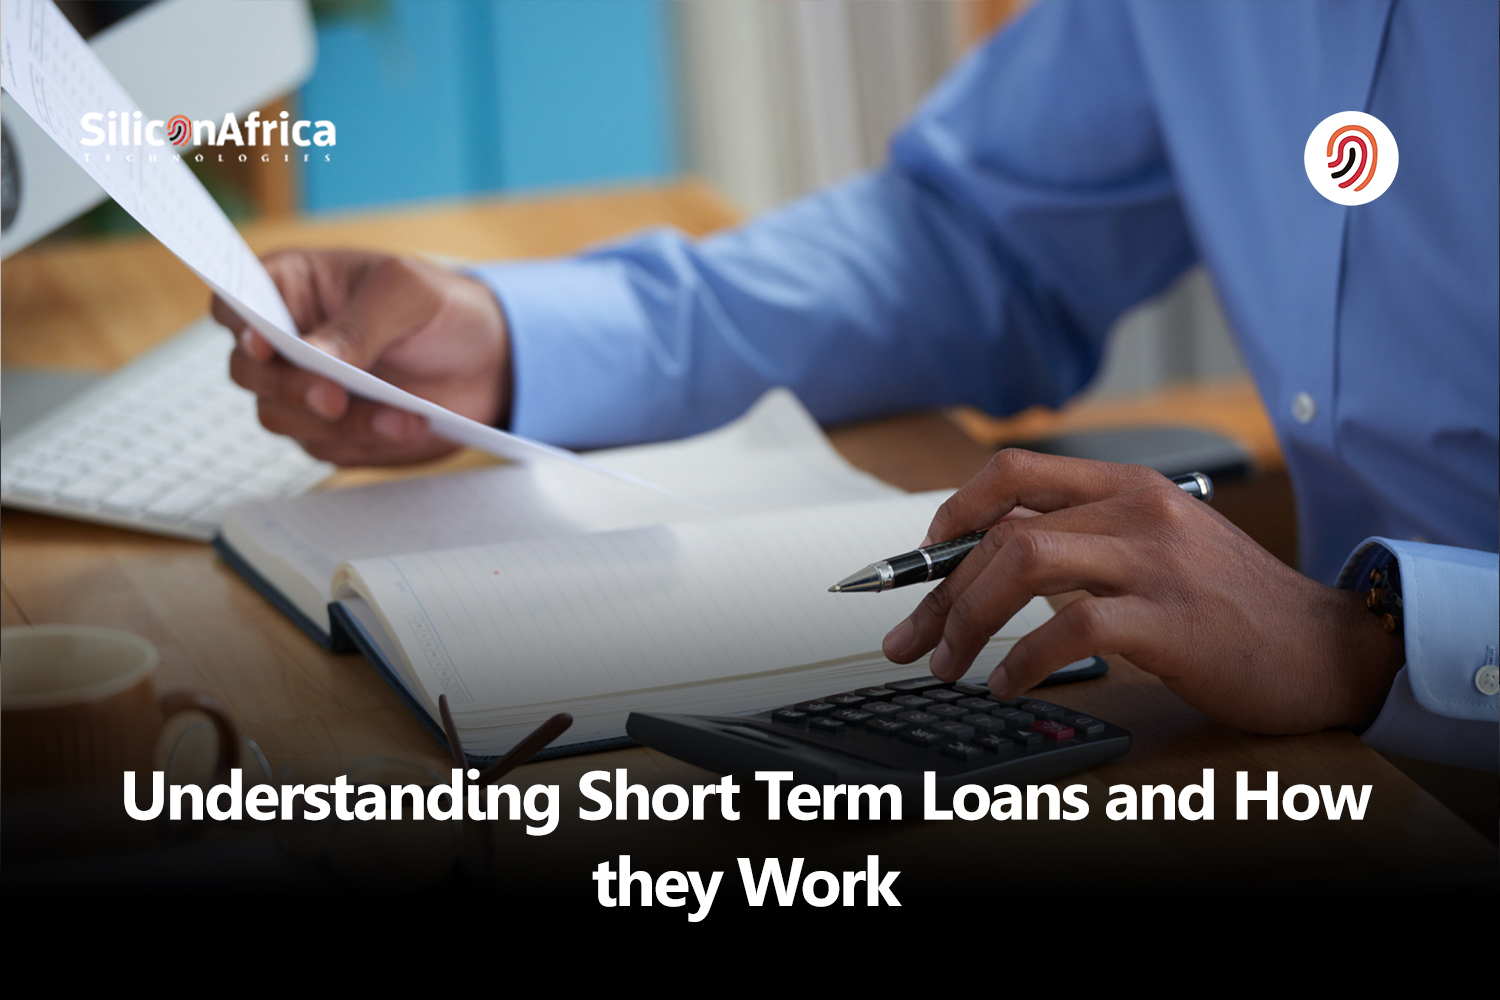 Short term loans